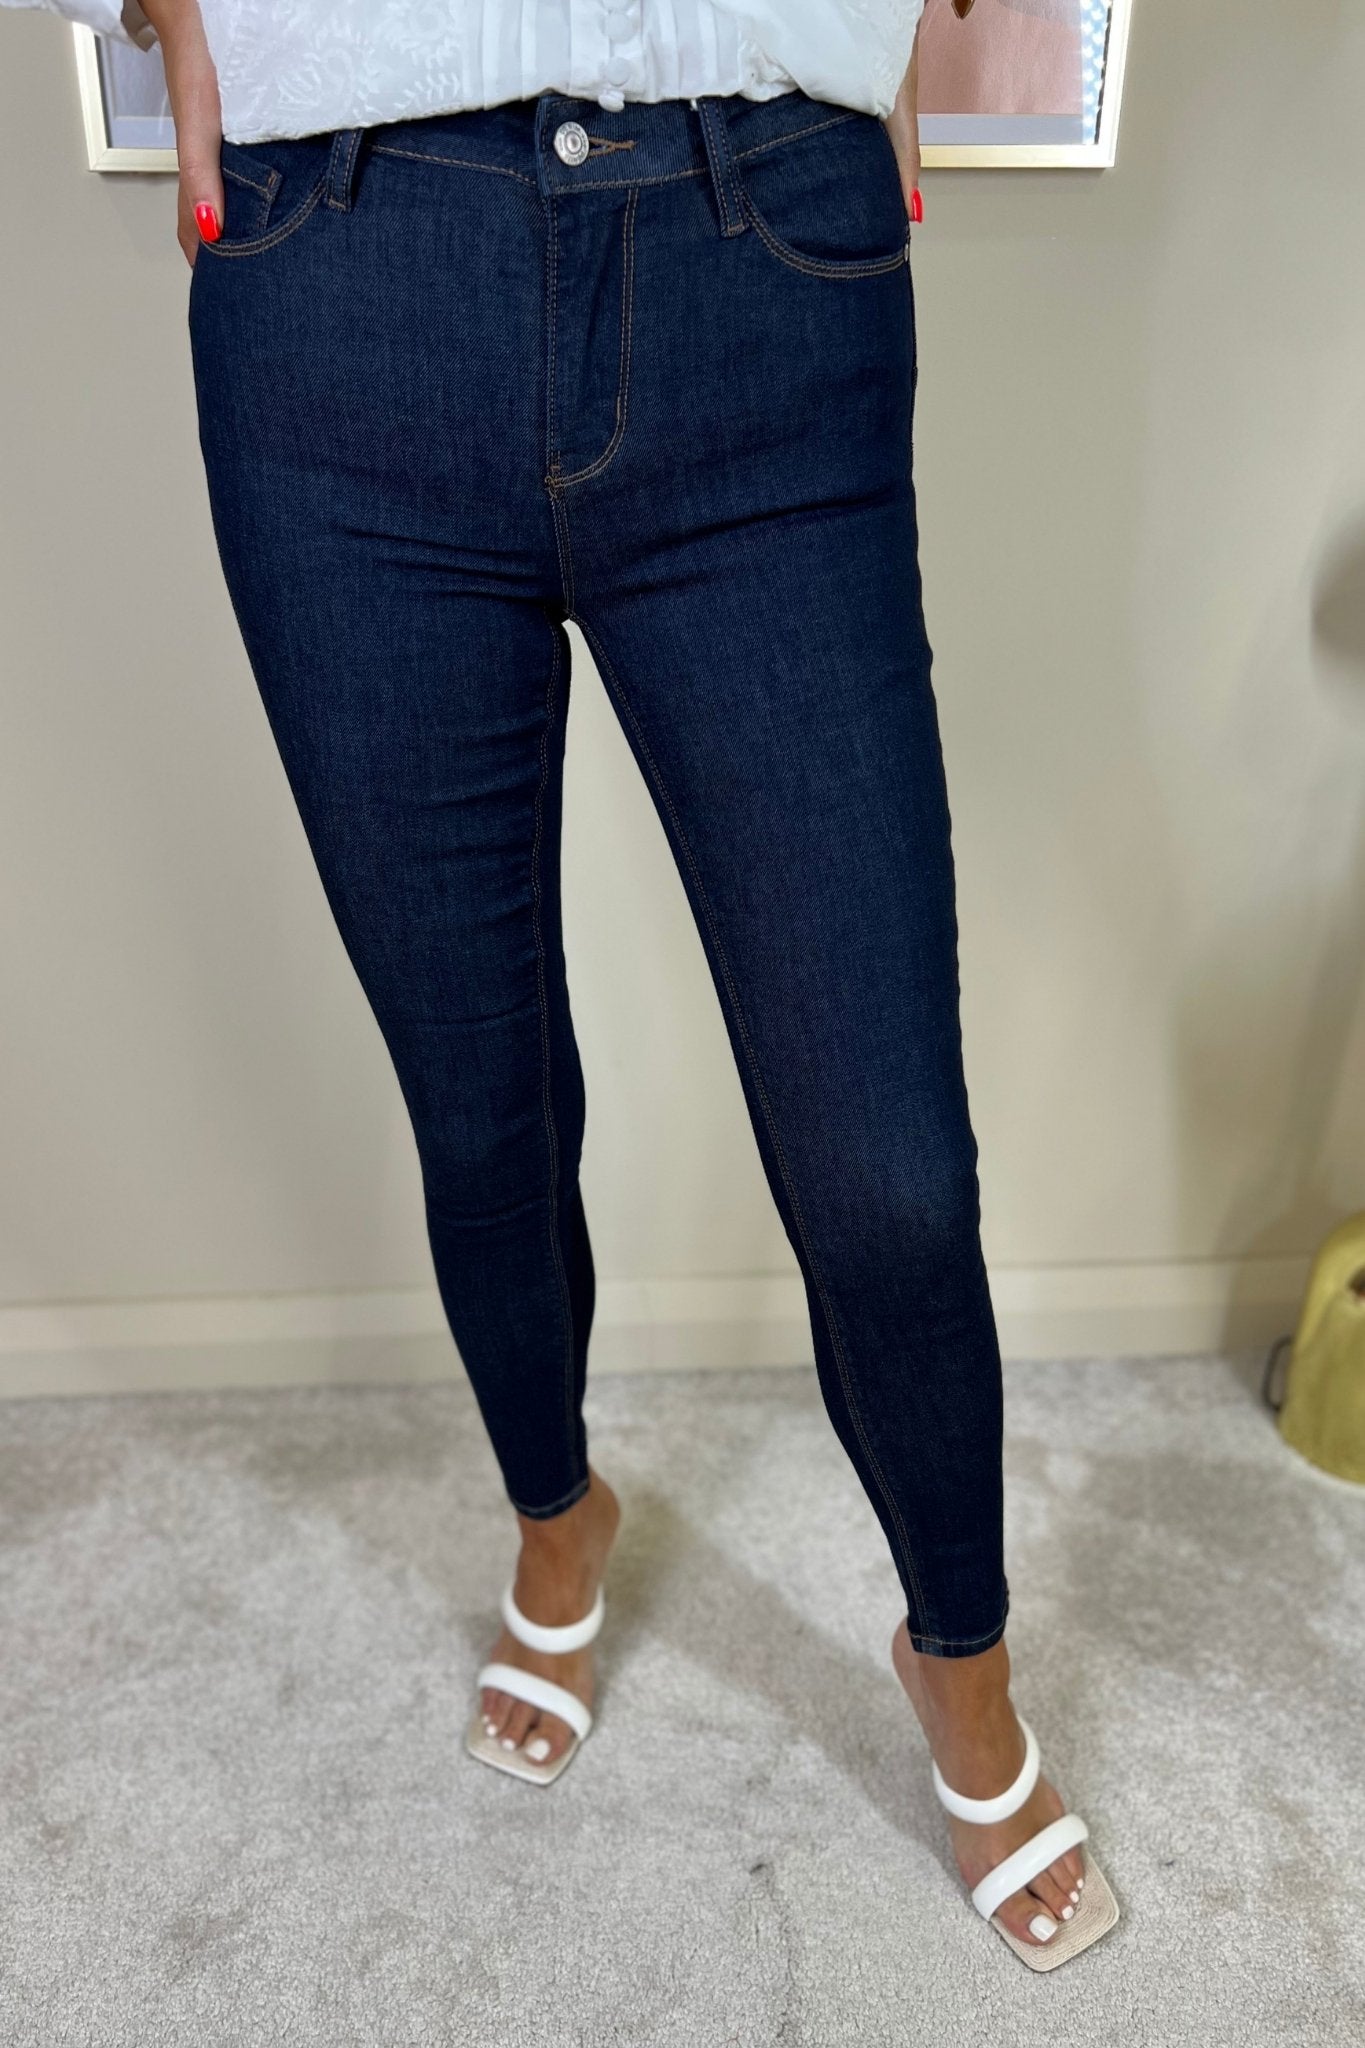 Cindy Bum Lift Jeans In Dark Wash - The Walk in Wardrobe